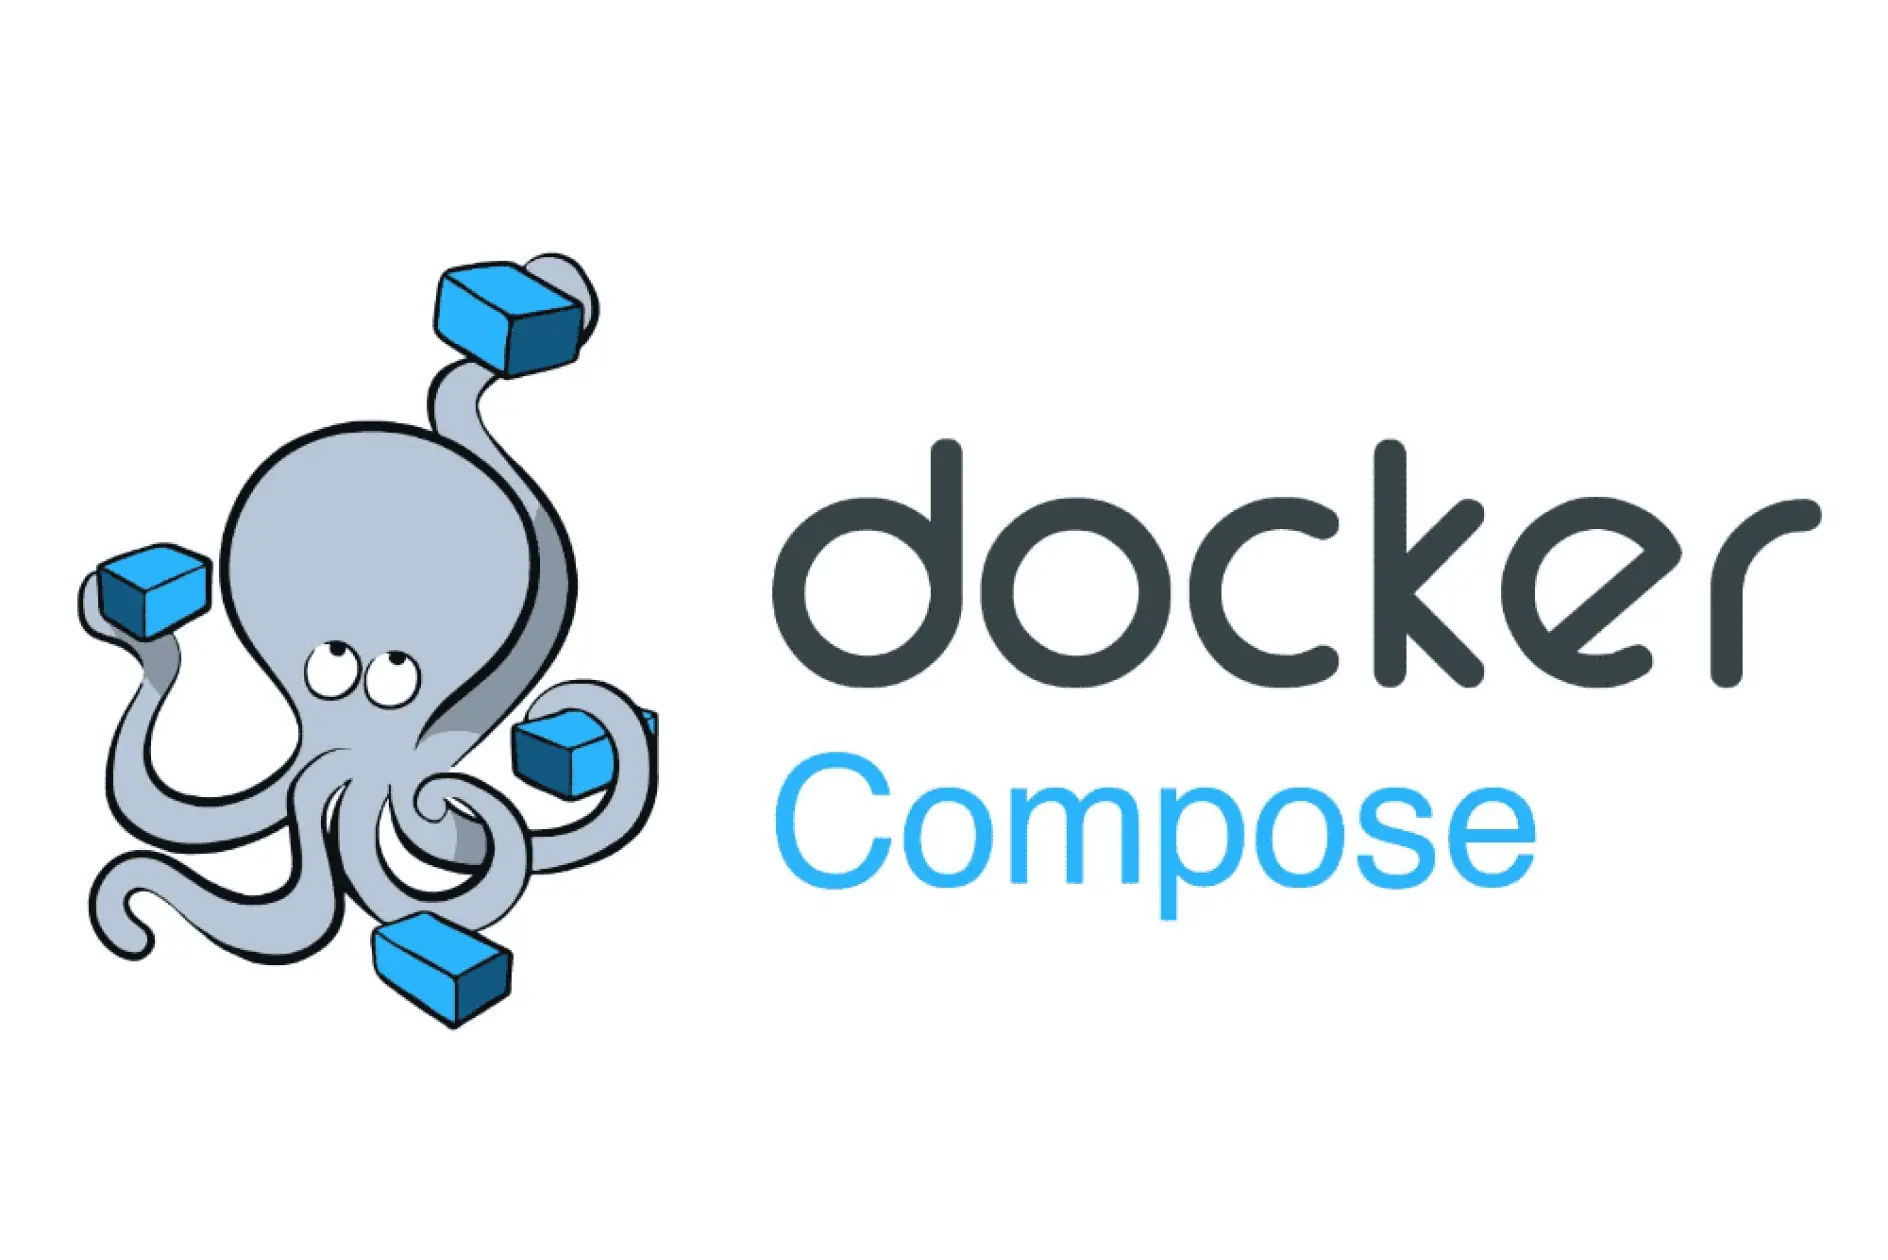 Docker Compose